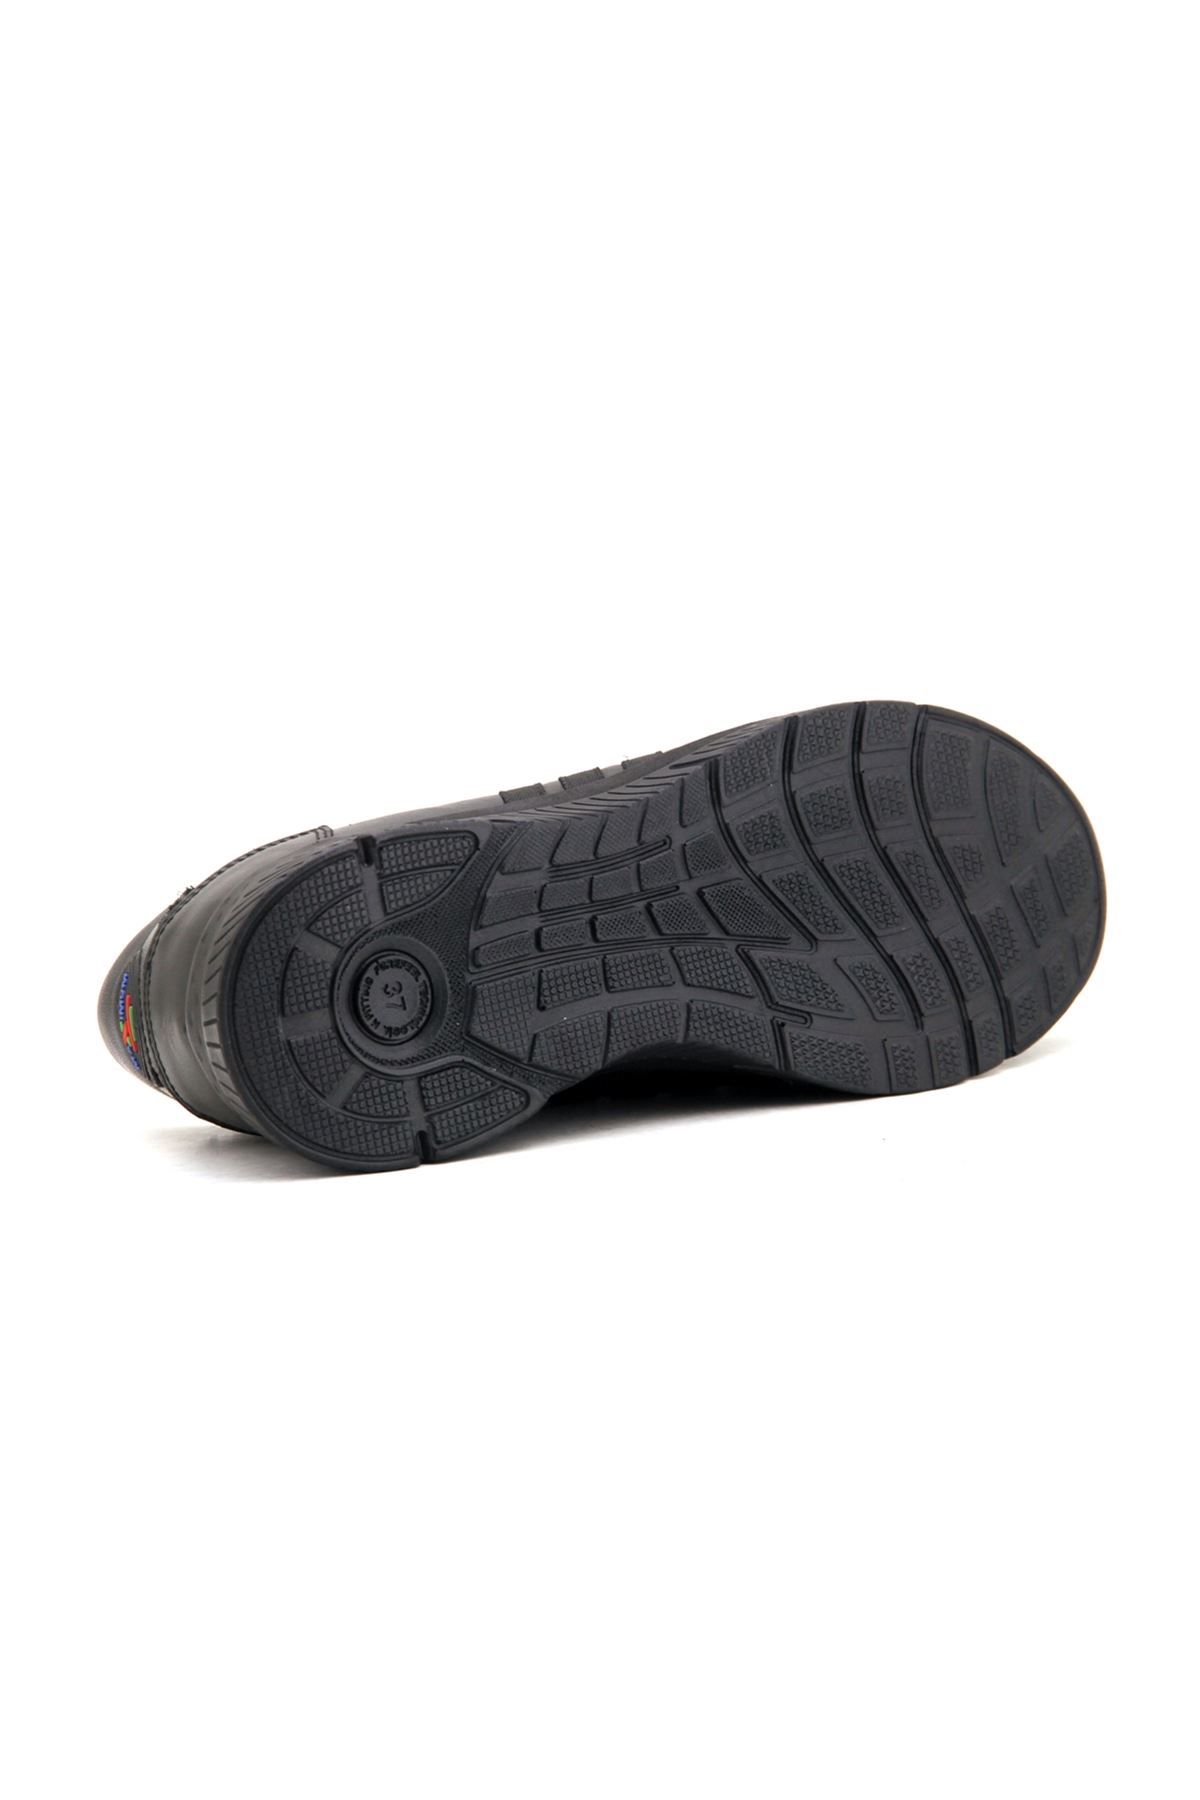 Forelli Fulya (29410) Comfort Kadın Ayakkabı - Siyah